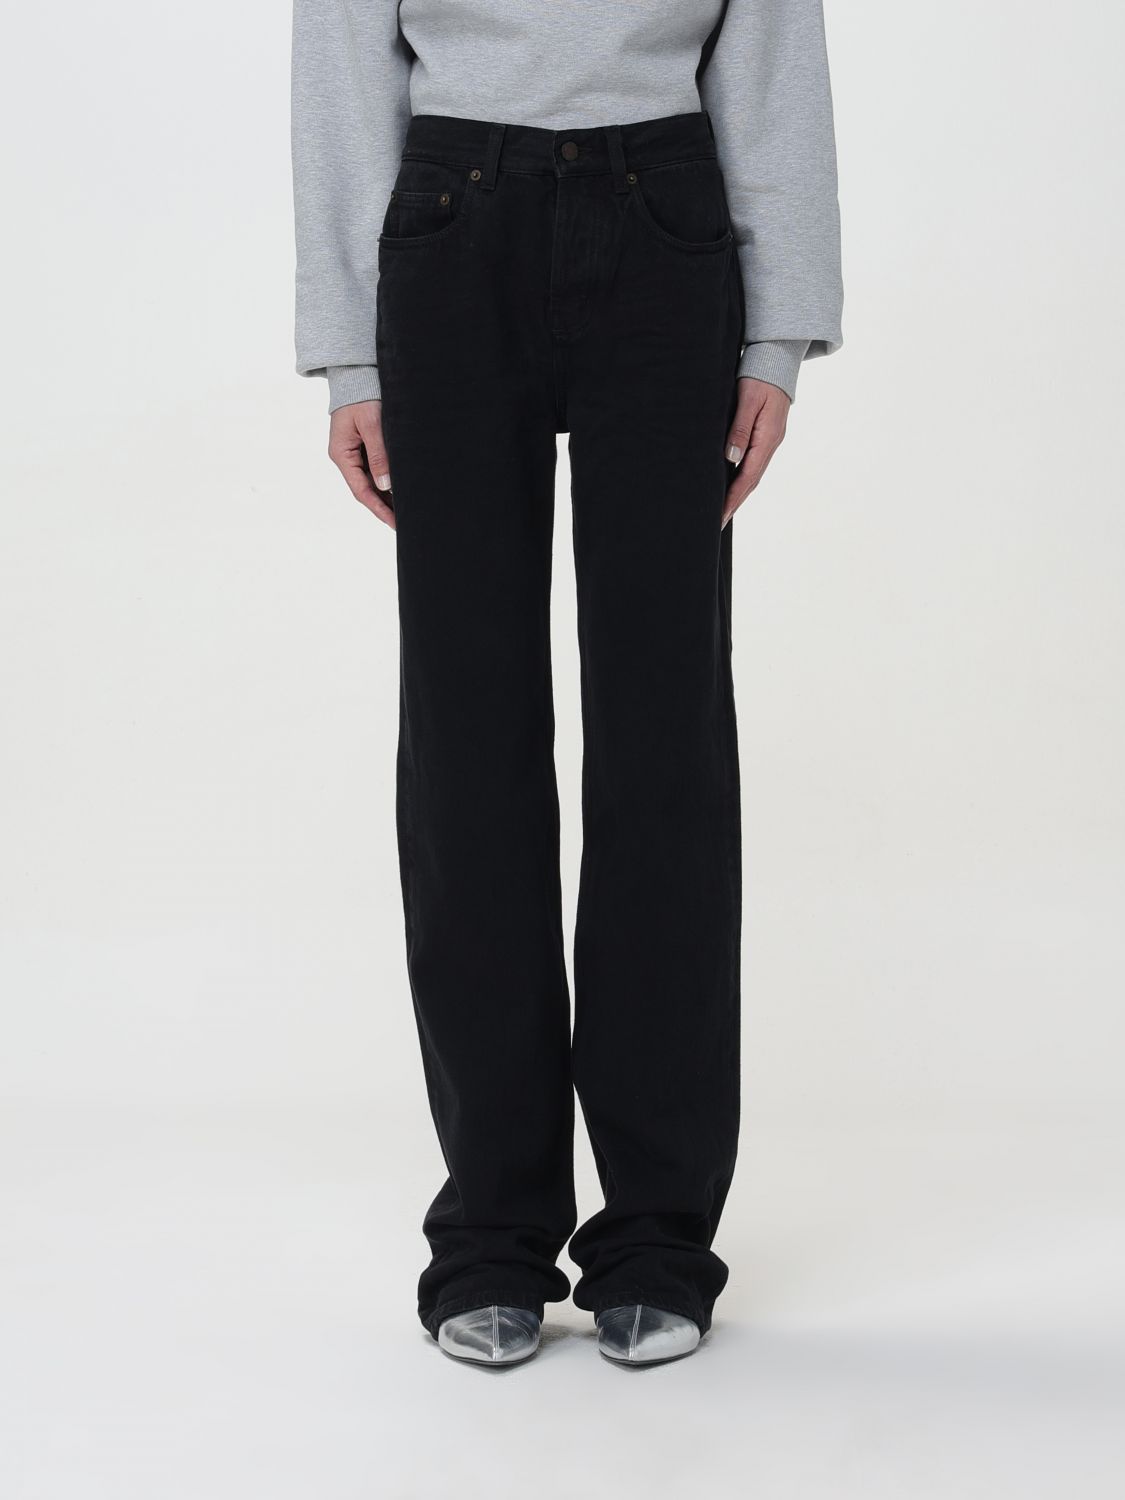 Saint Laurent Jeans  Woman In Black